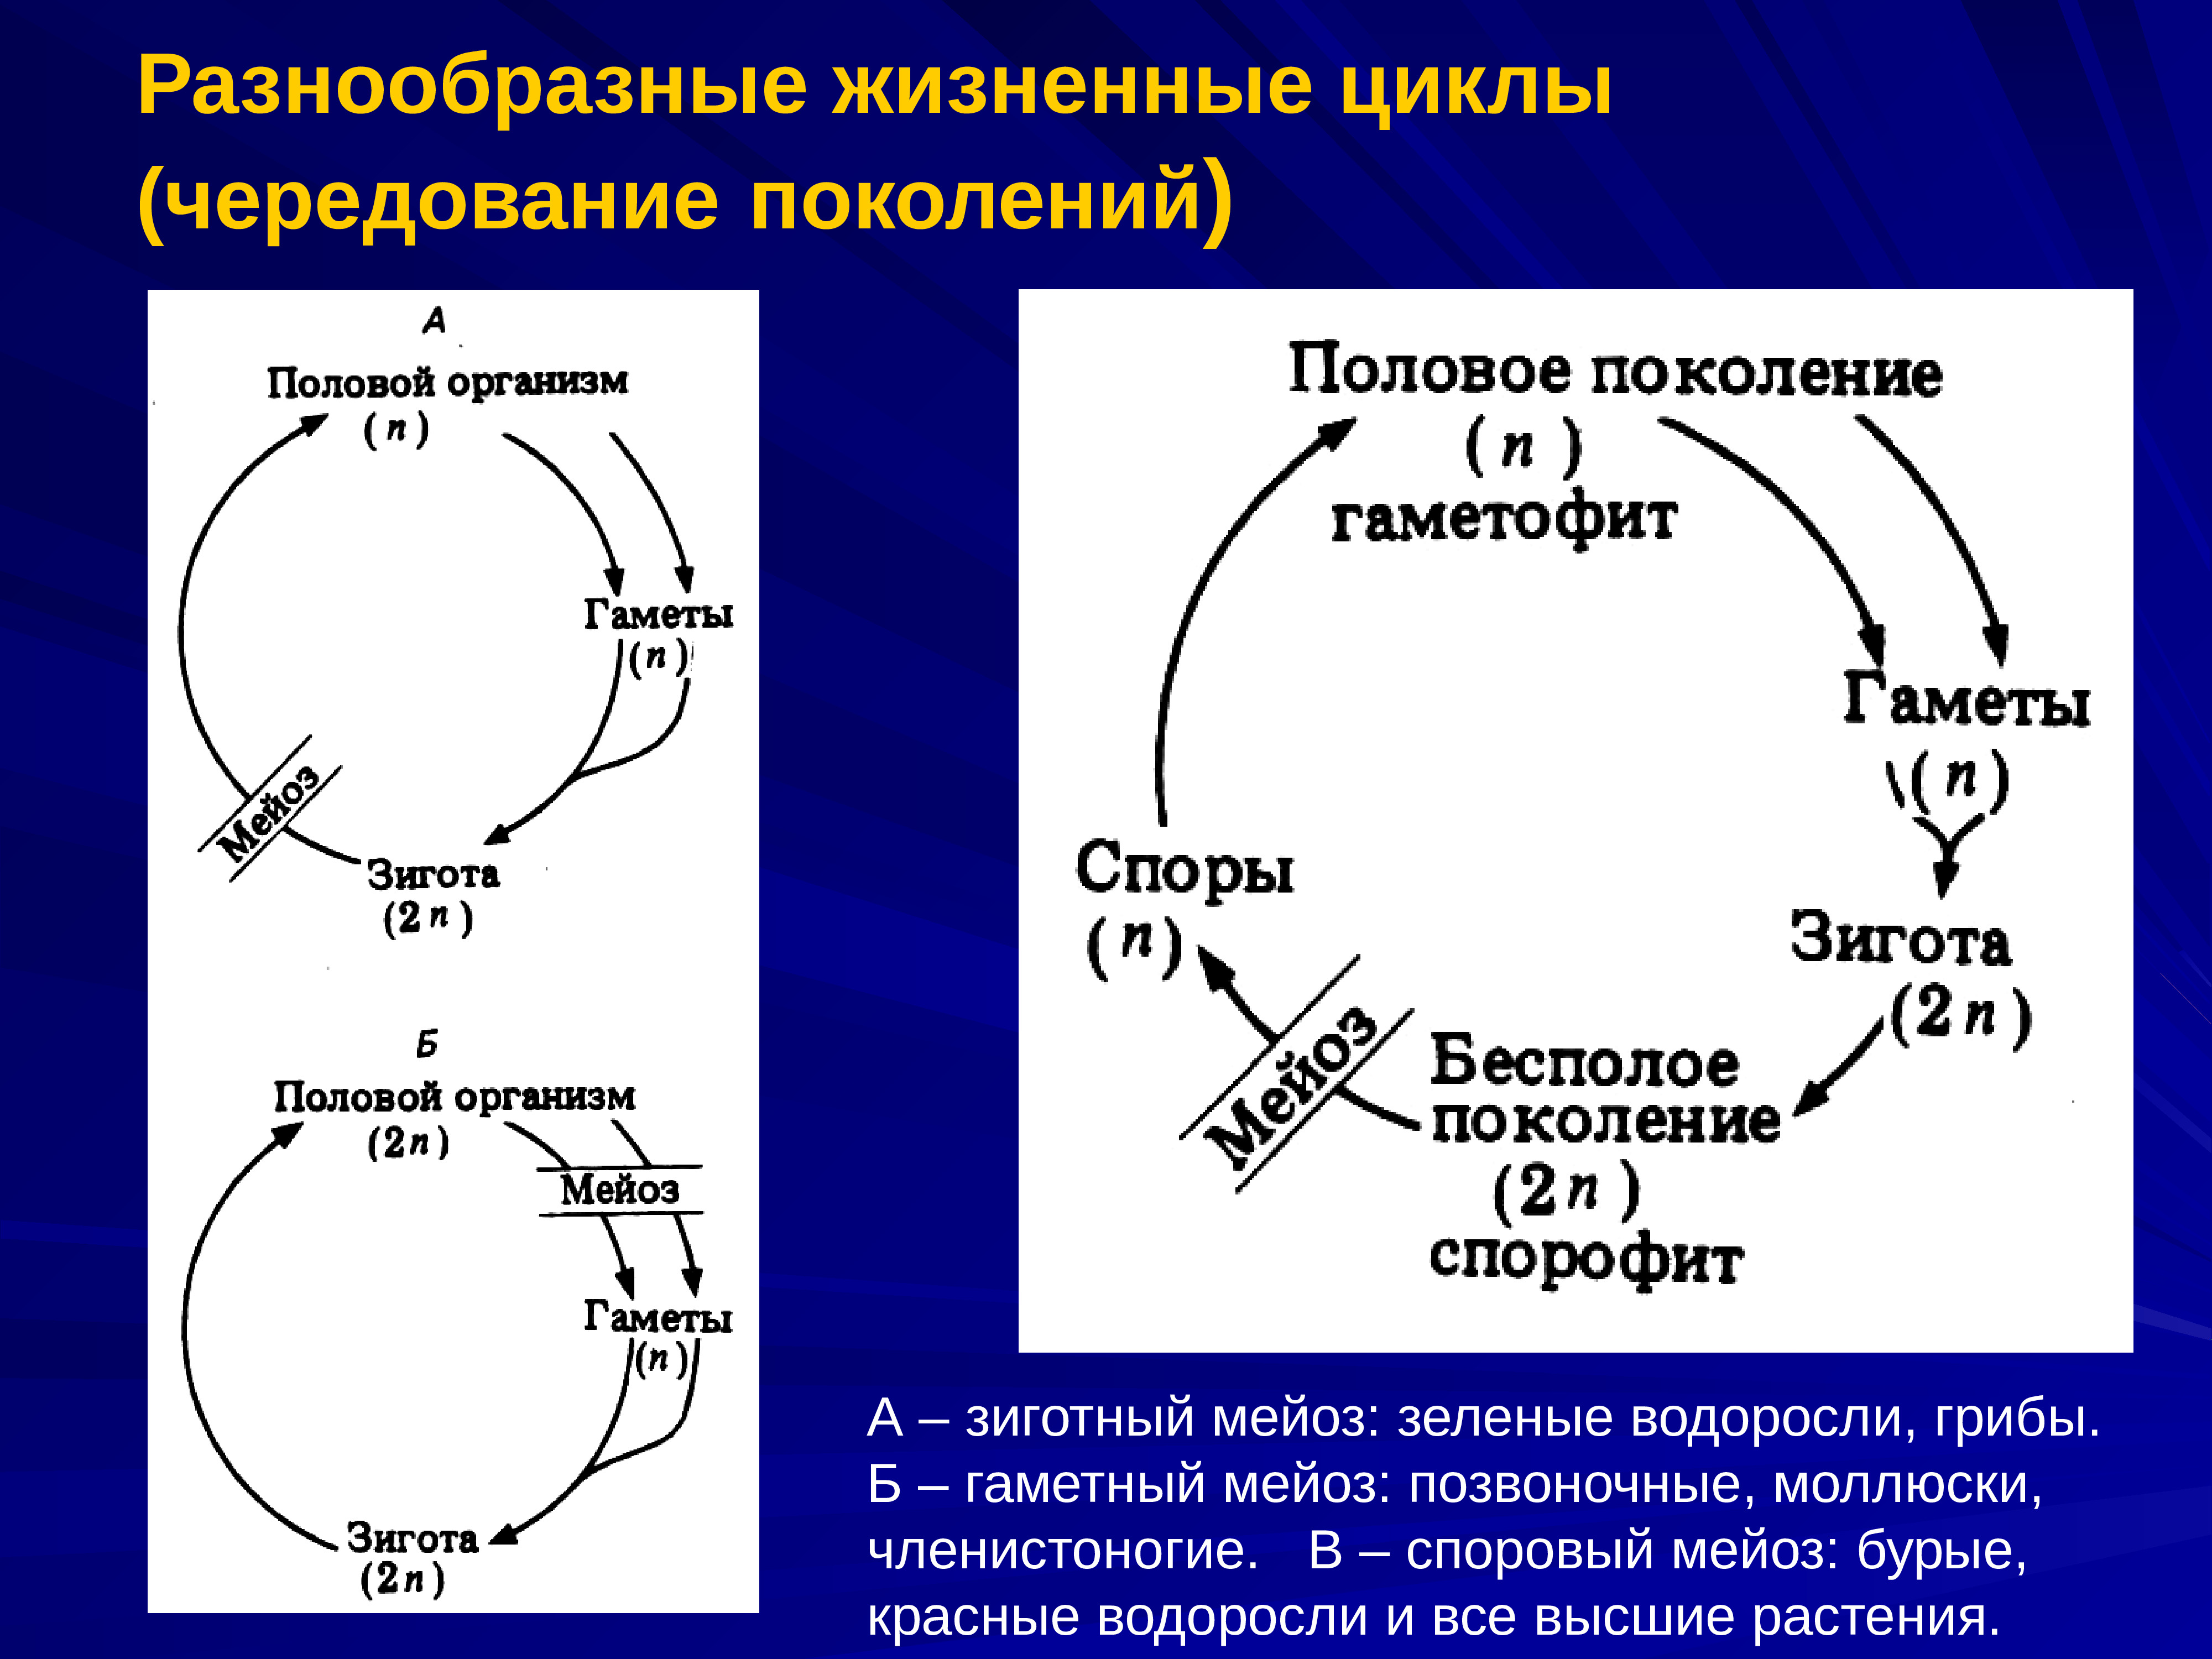 Мейоз в жизненном цикле организмов. Разнообразные жизненные циклы чередование поколений. Жизненный цикл с чередованием поколений. Чередование поколений в жизненном цикле. Жизненный цикл водорослей митоз и мейоз.